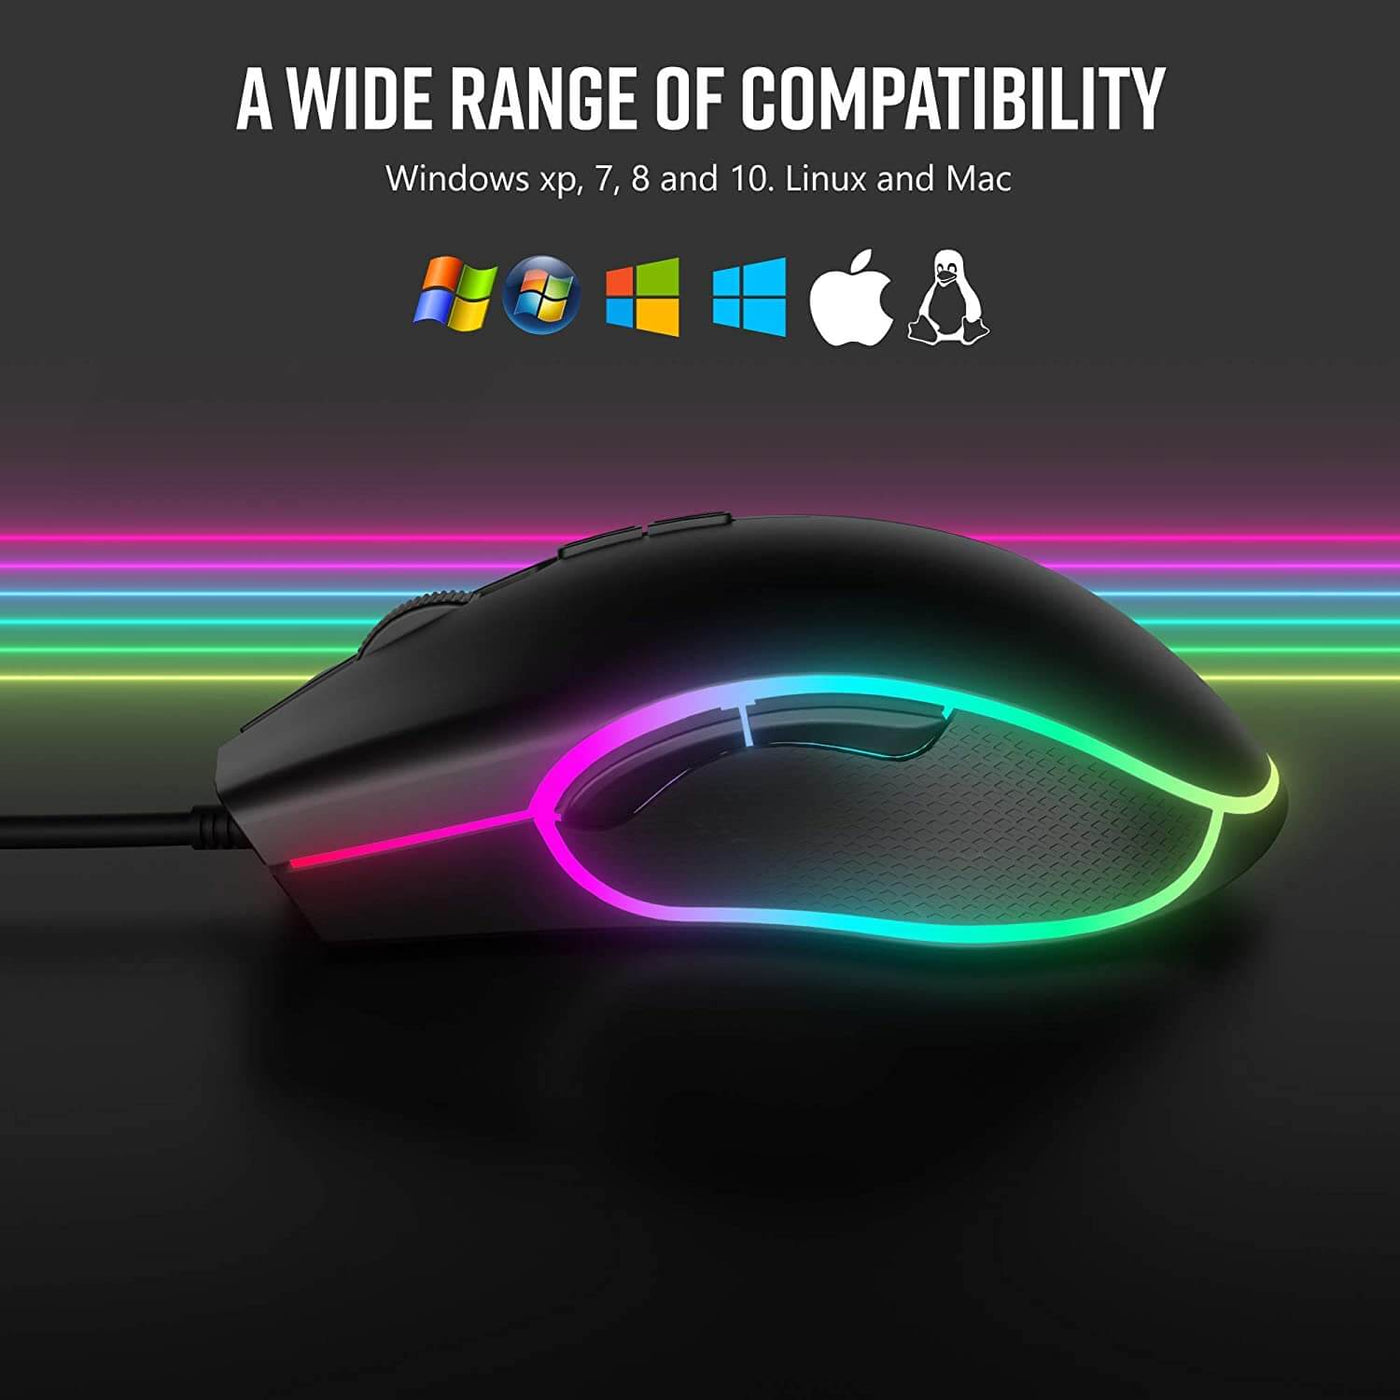 Altec Lansing Ergonomic RGB Wired Gaming Mouse - Smart Tech Shopping